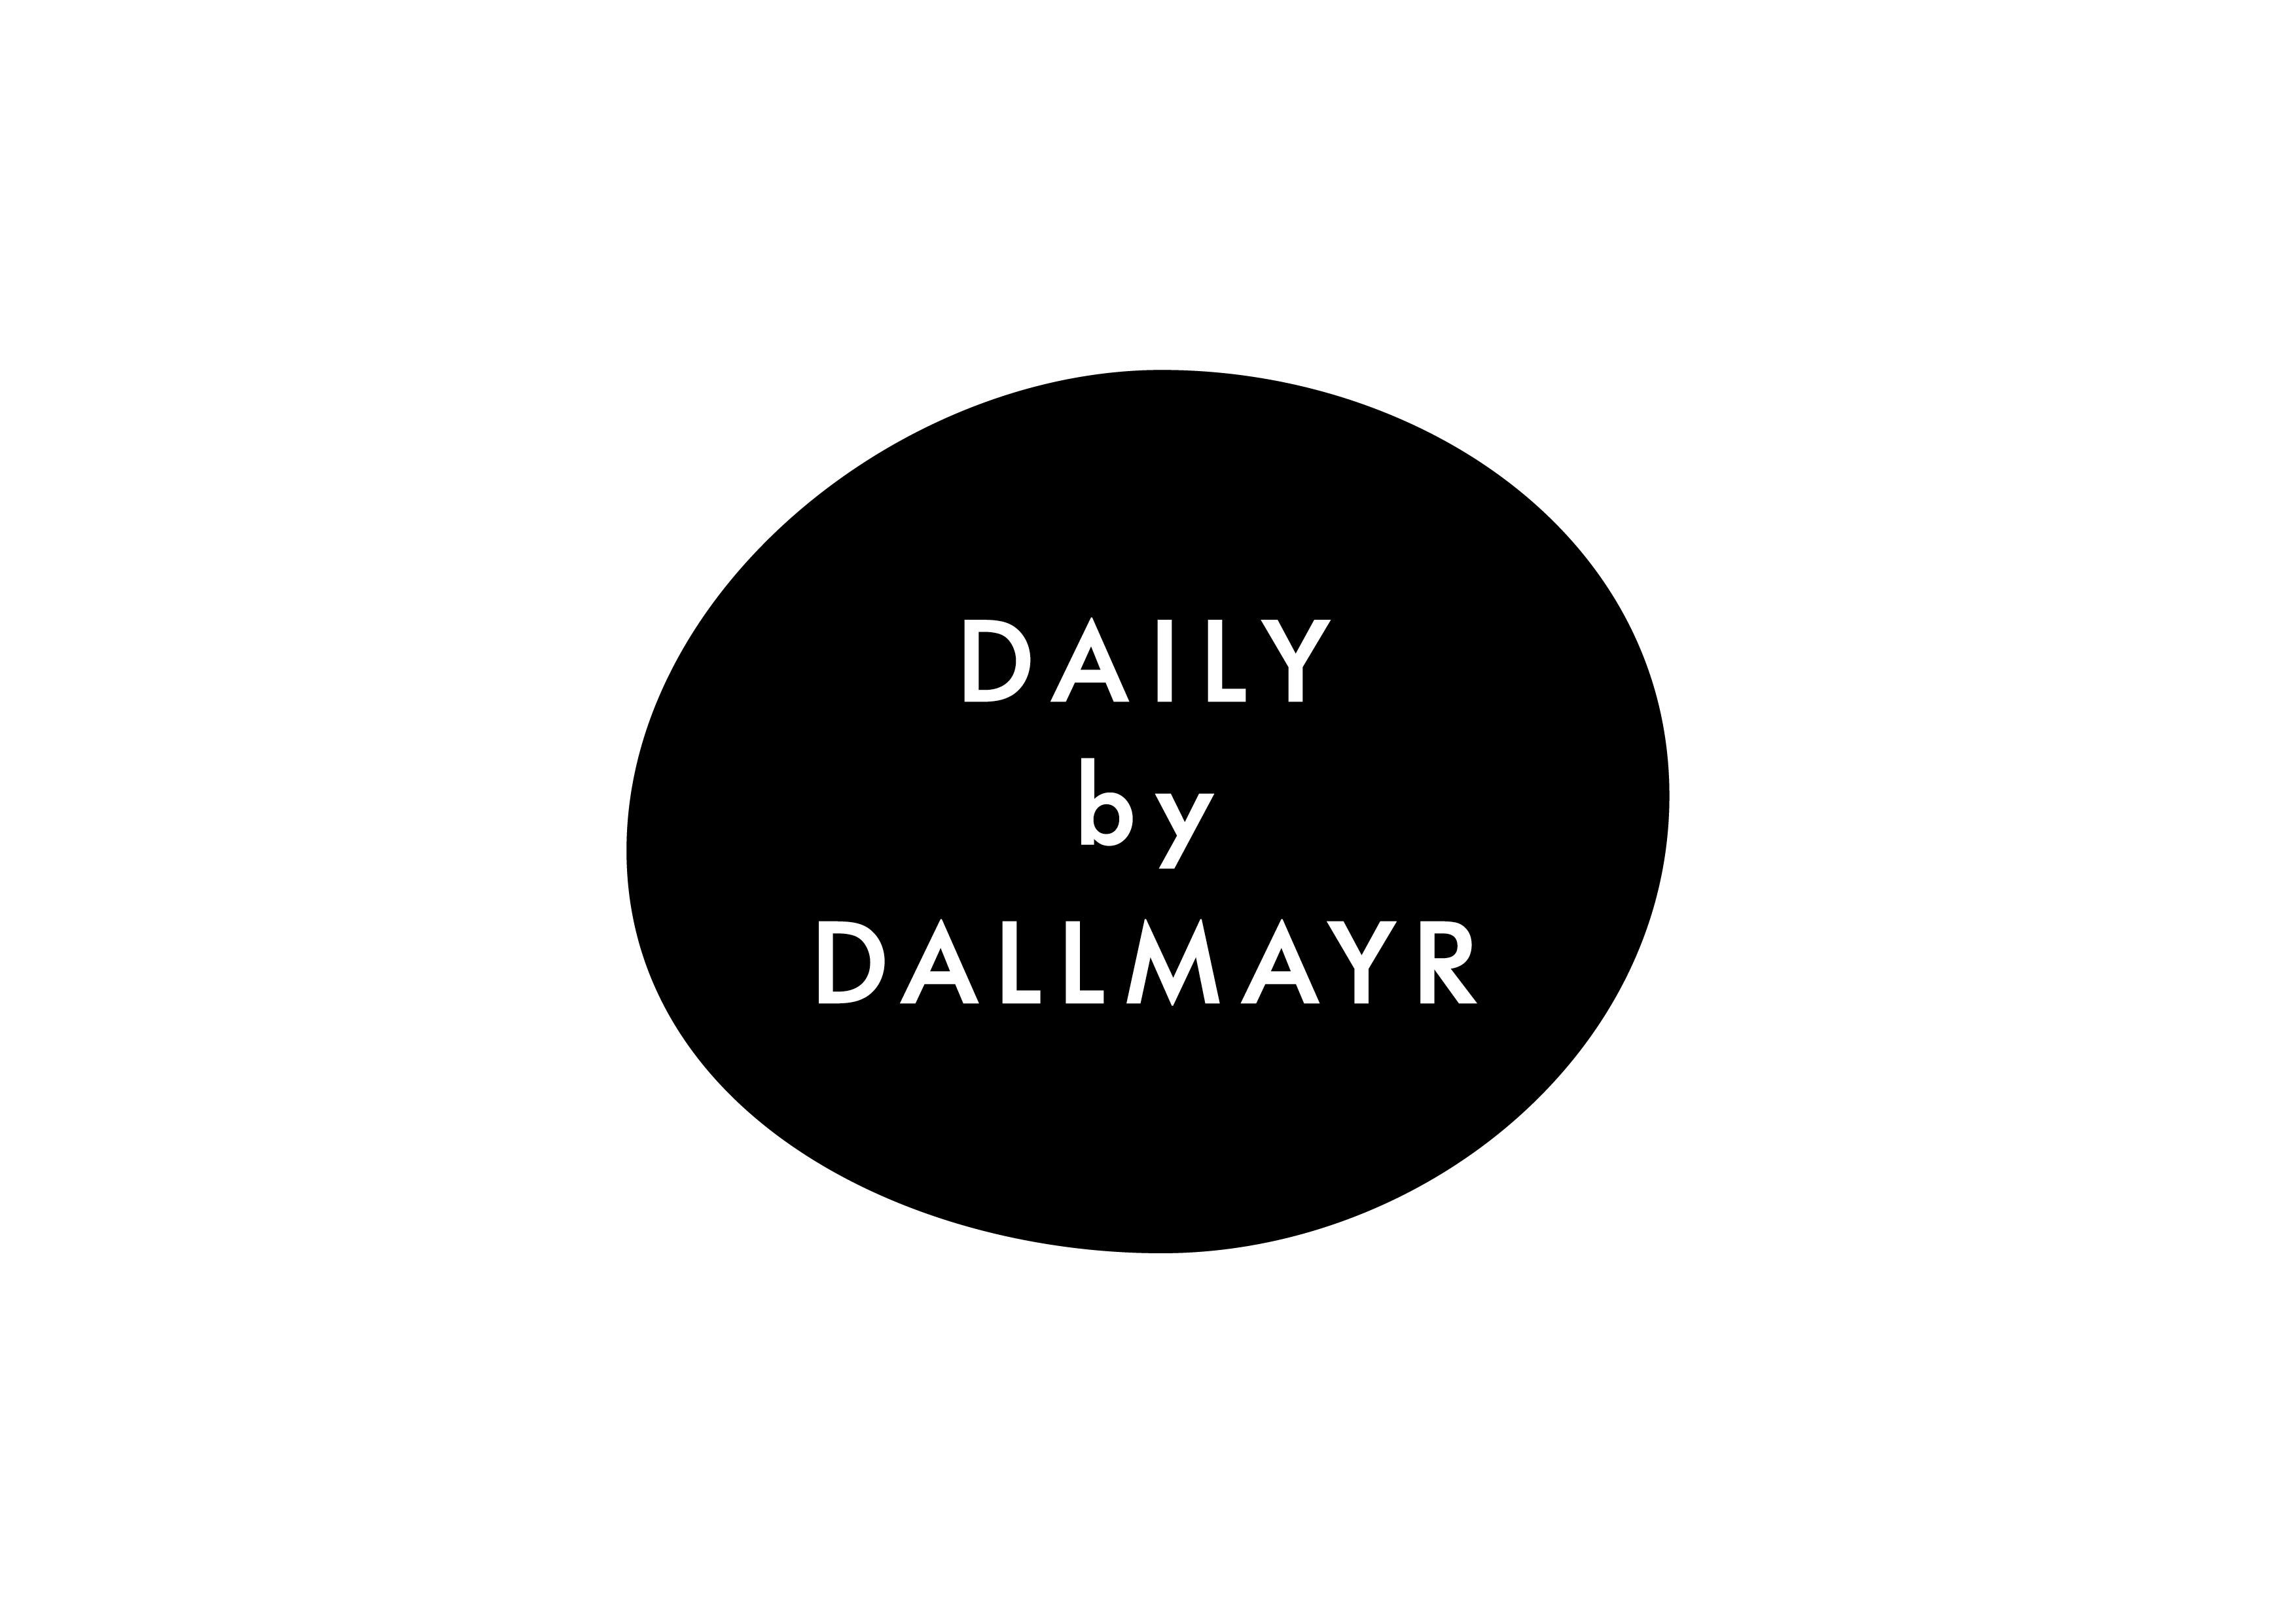 Daily by Dallmayr